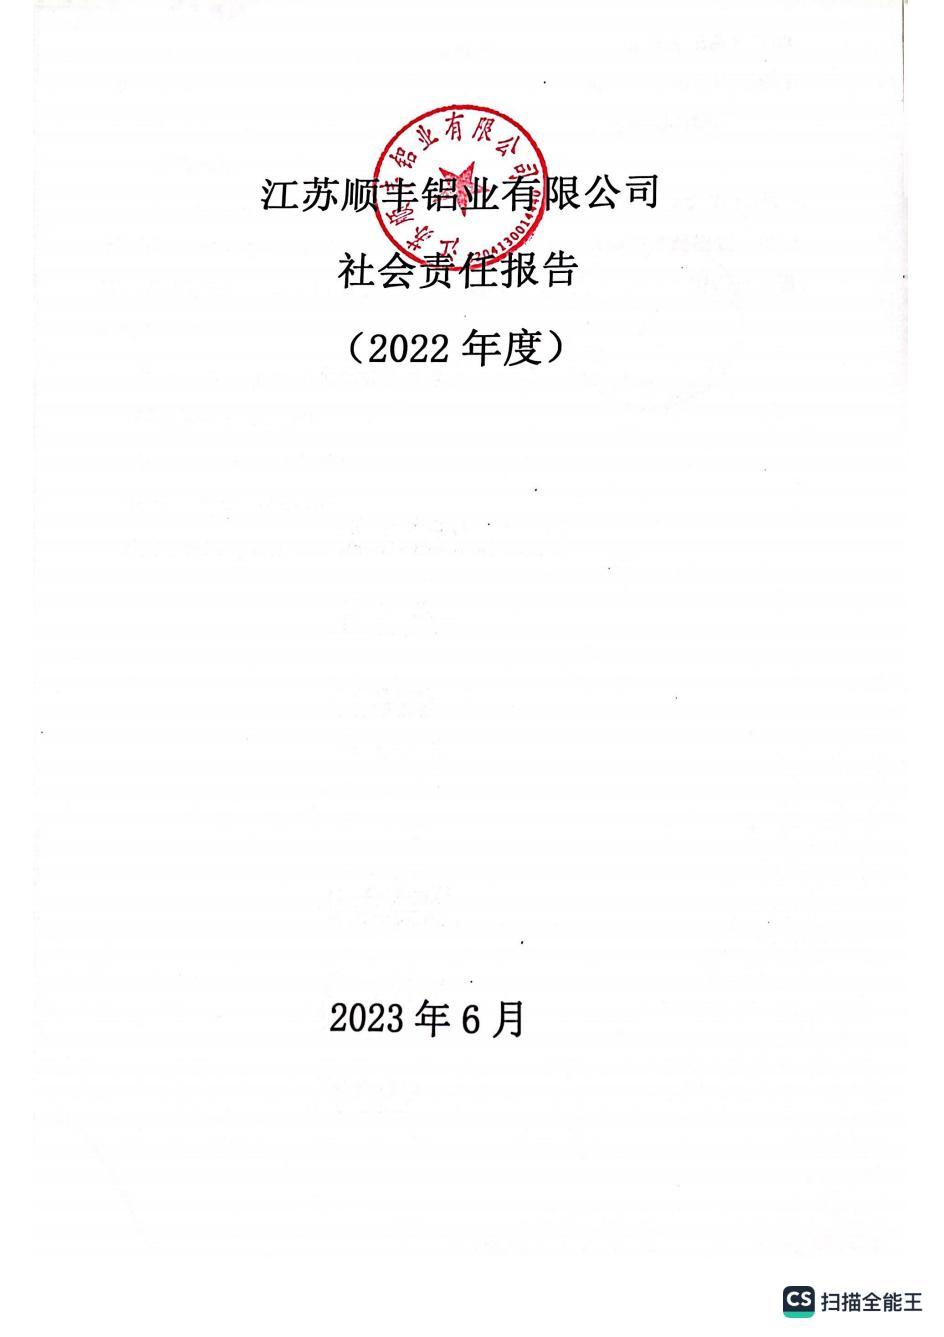 江苏顺丰铝业社会责任报告（2022年度）